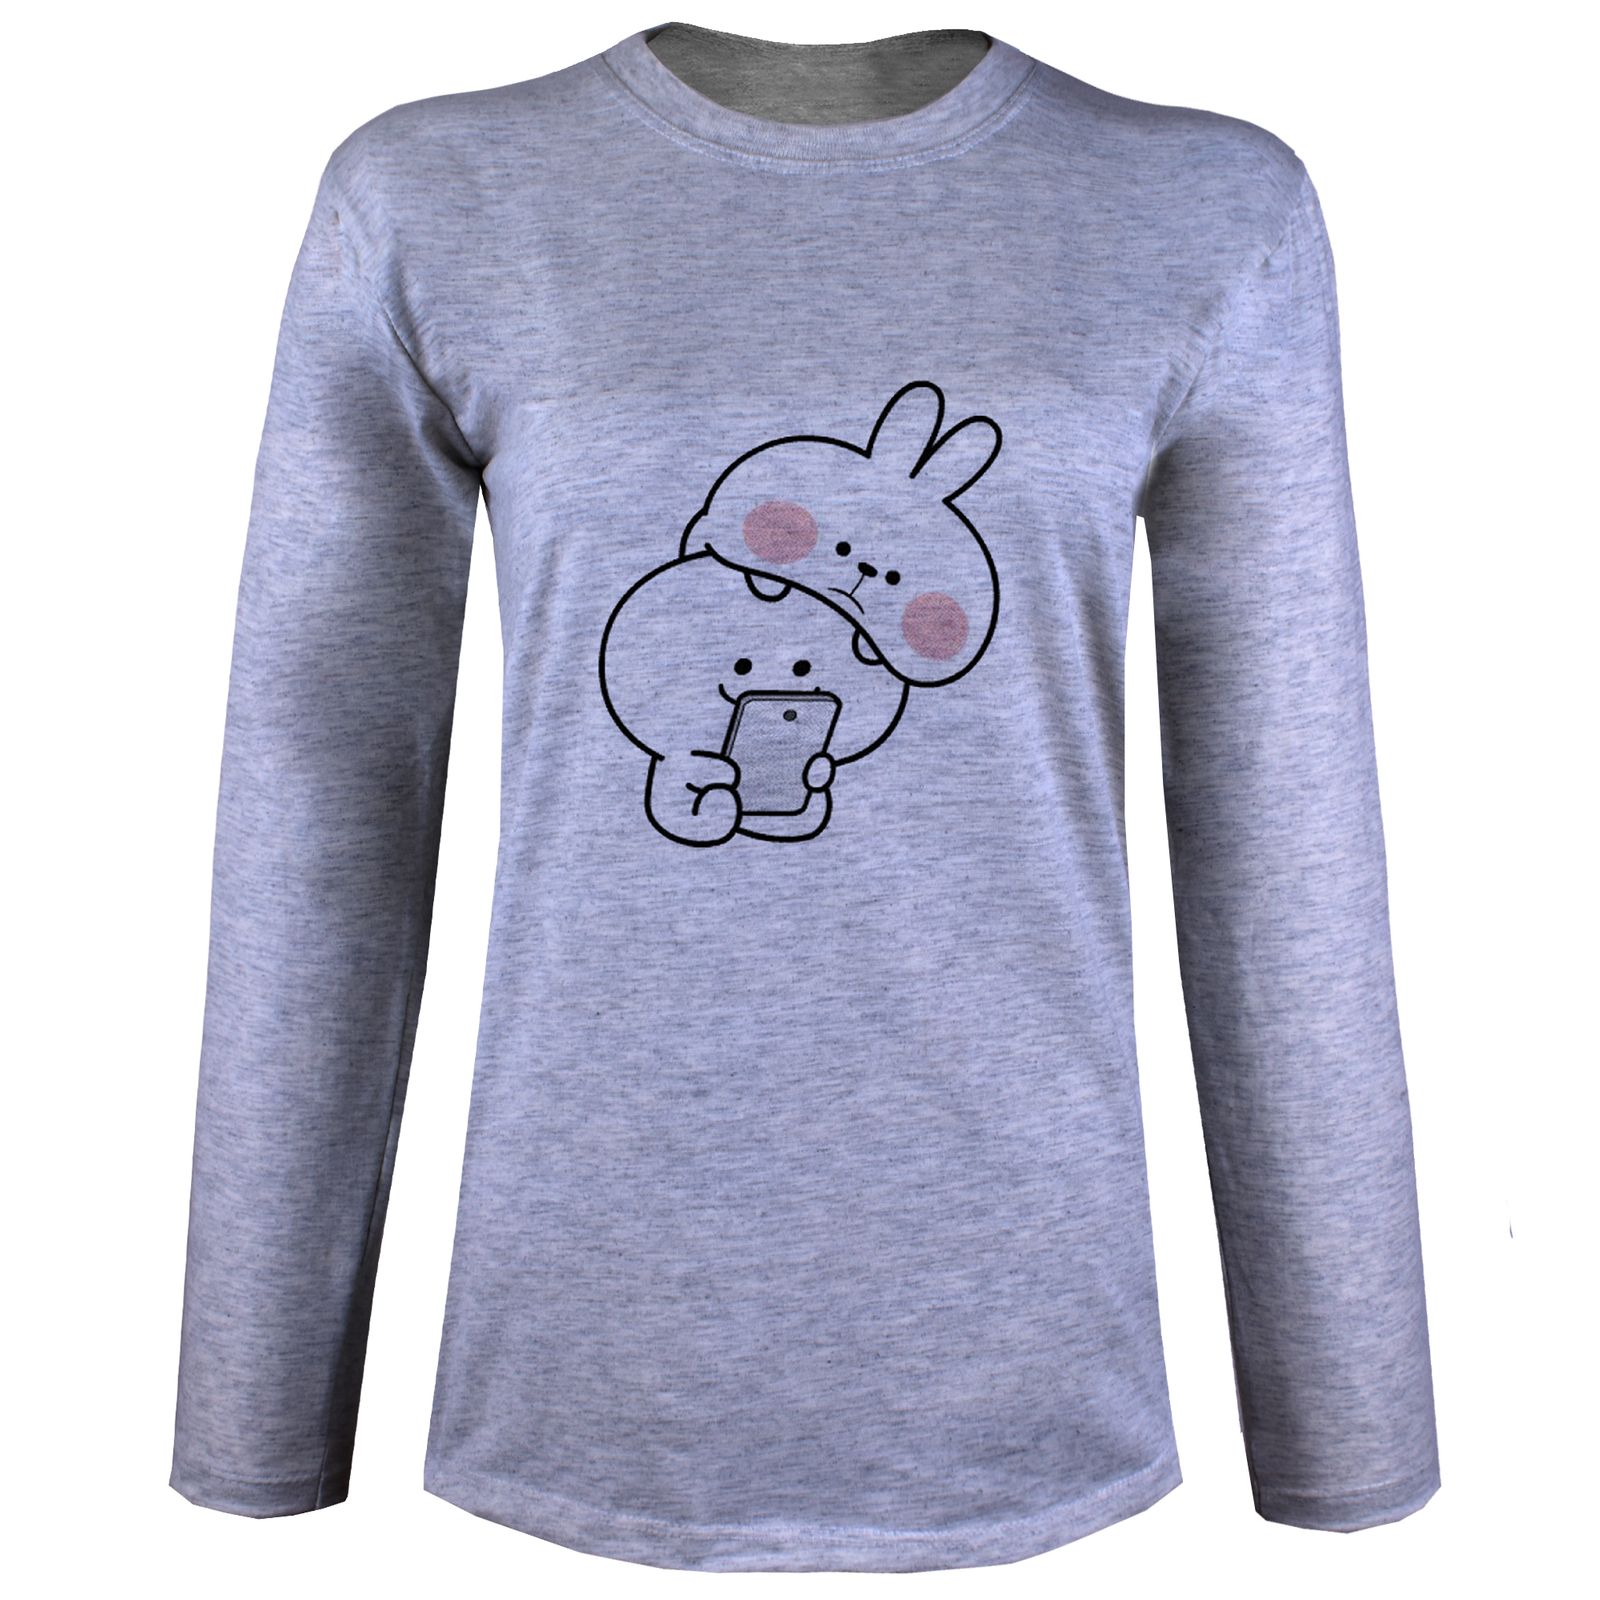 تی شرت آستین بلند زنانه مدل خرگوش X29 -  - 3